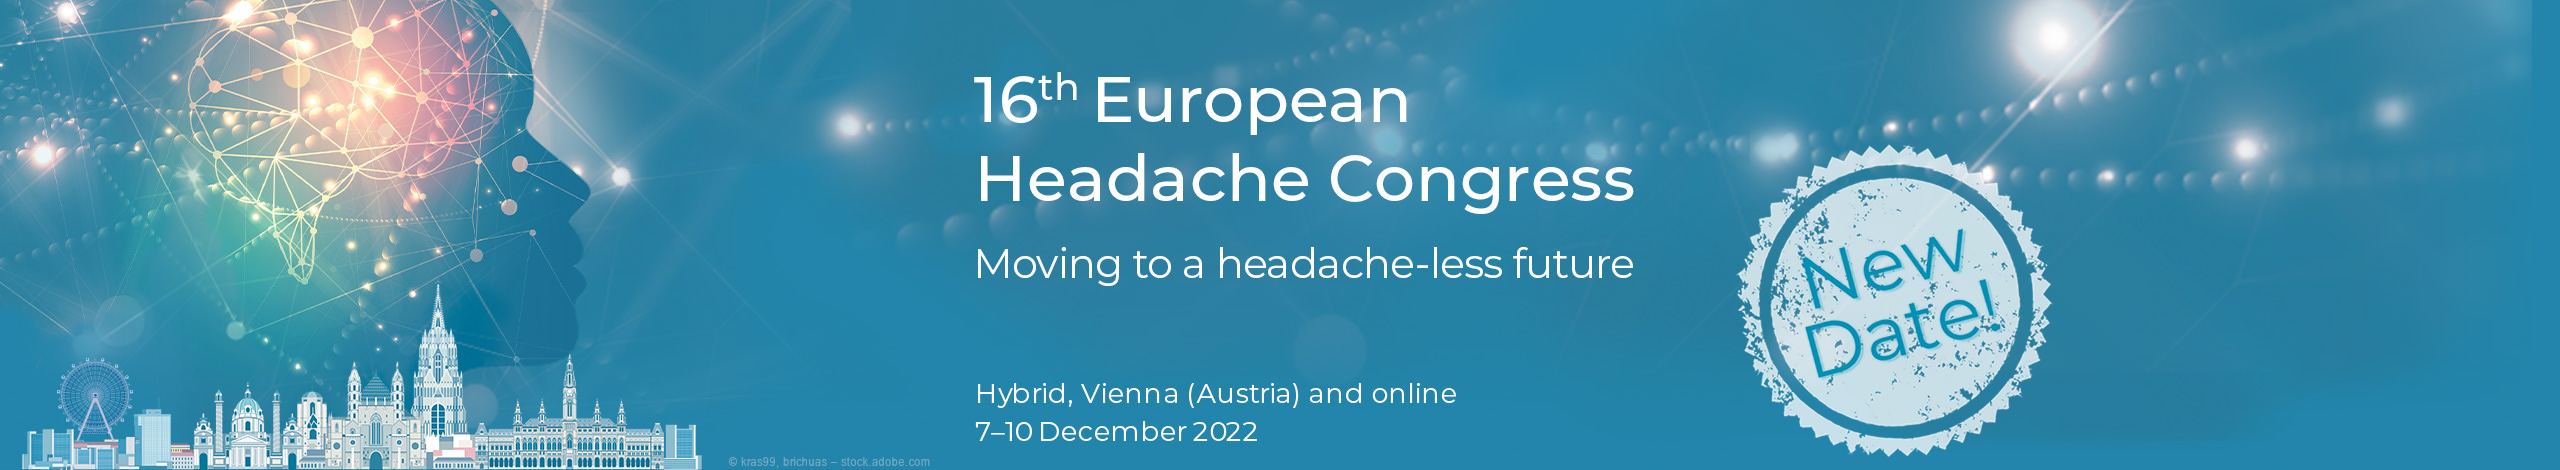 European Headache Congress 2022